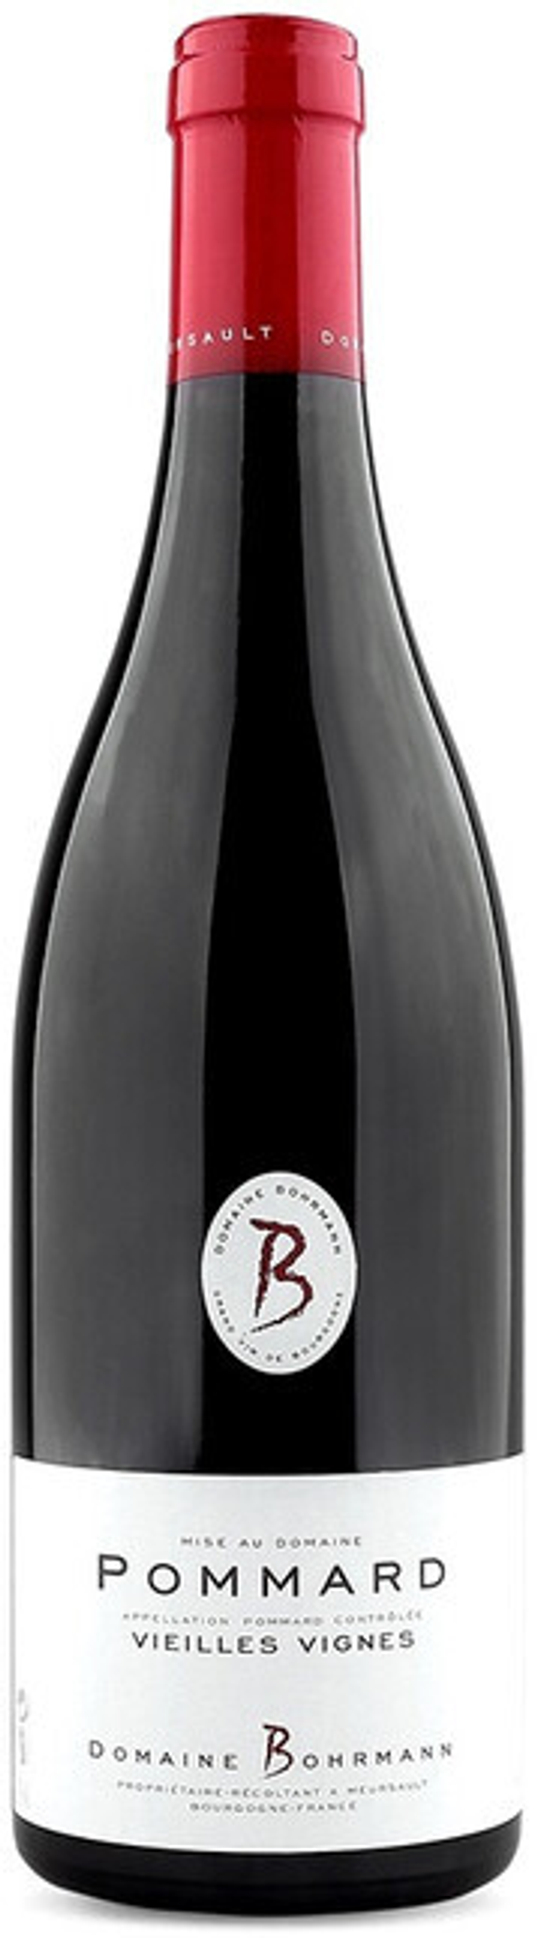 Вино Domaine Bohrmann Pommard Vieilles Vignes AOC, 0,75 л.